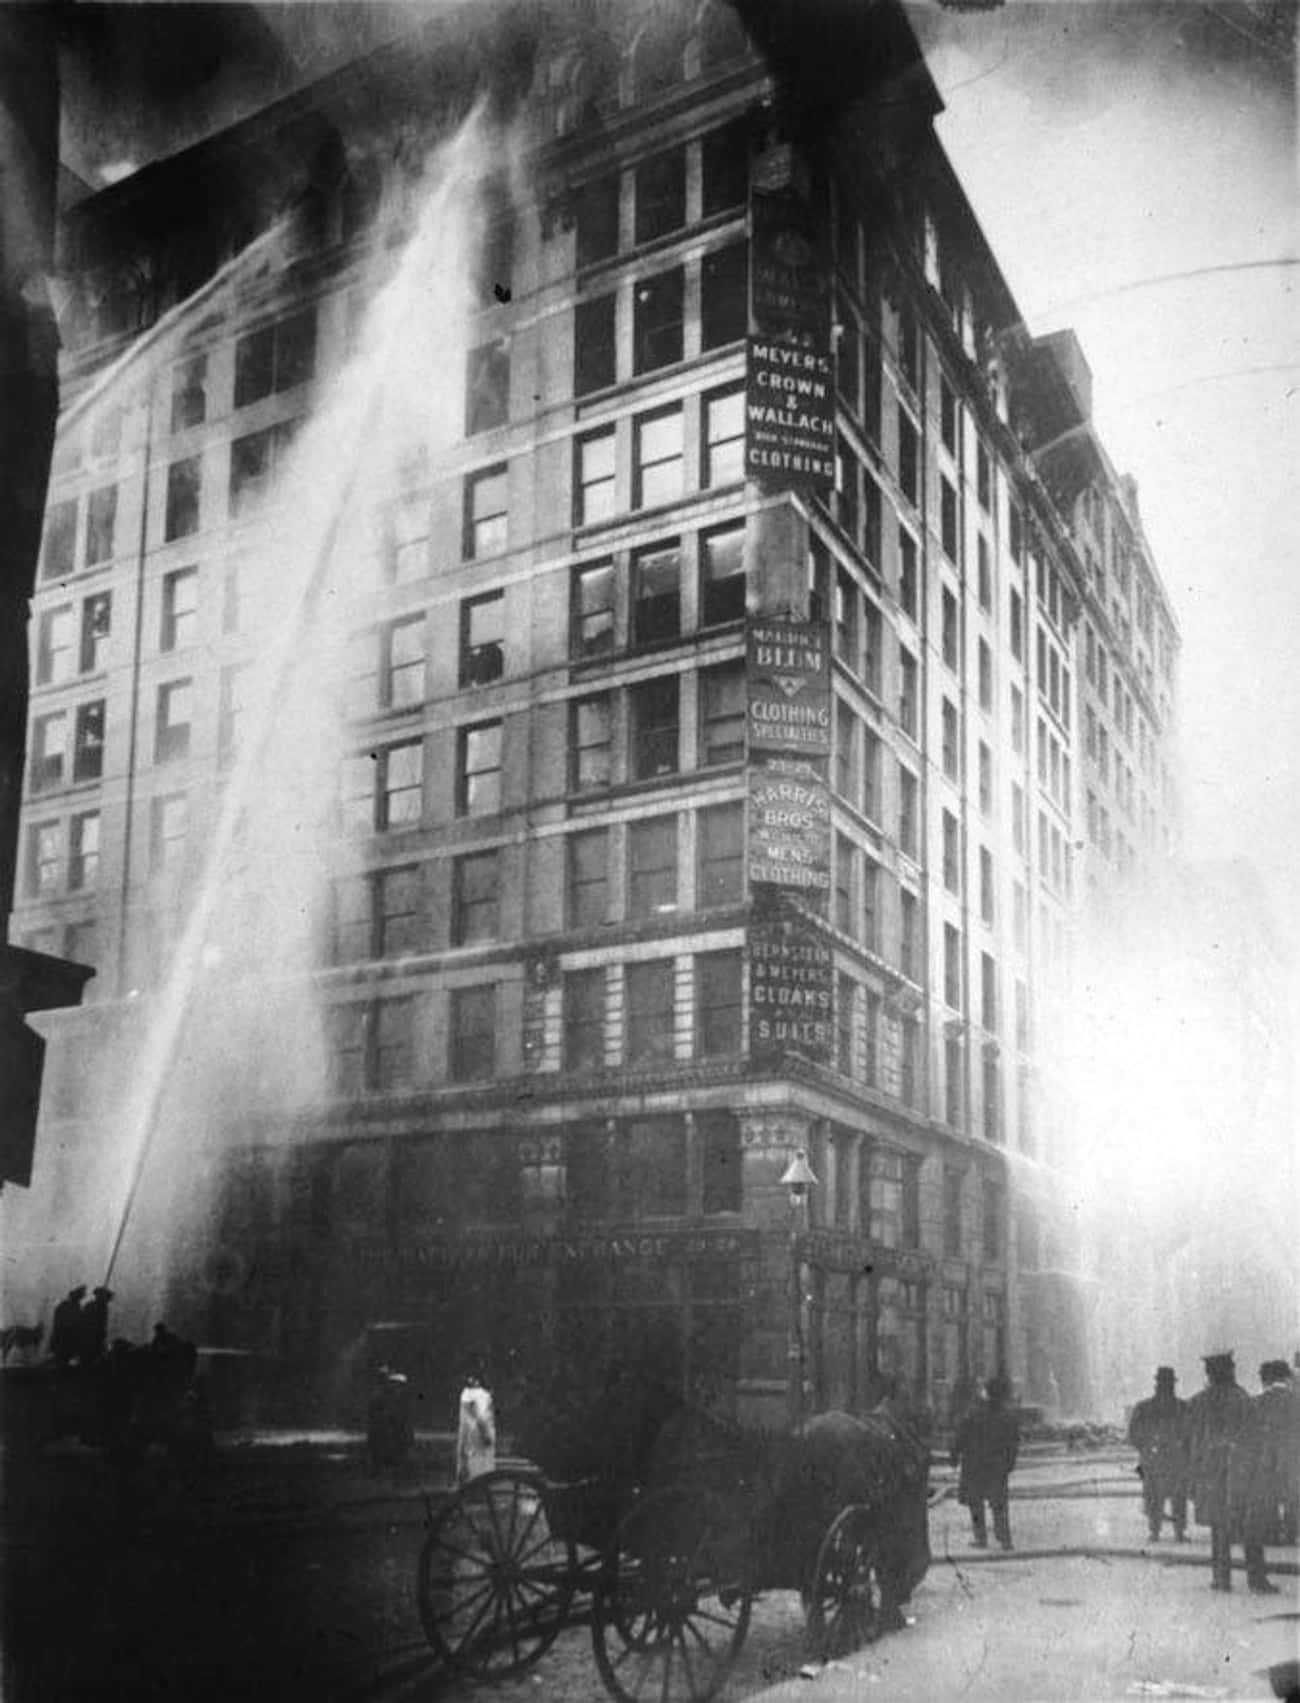 1911: Triangle Shirtwaist Factory Fire